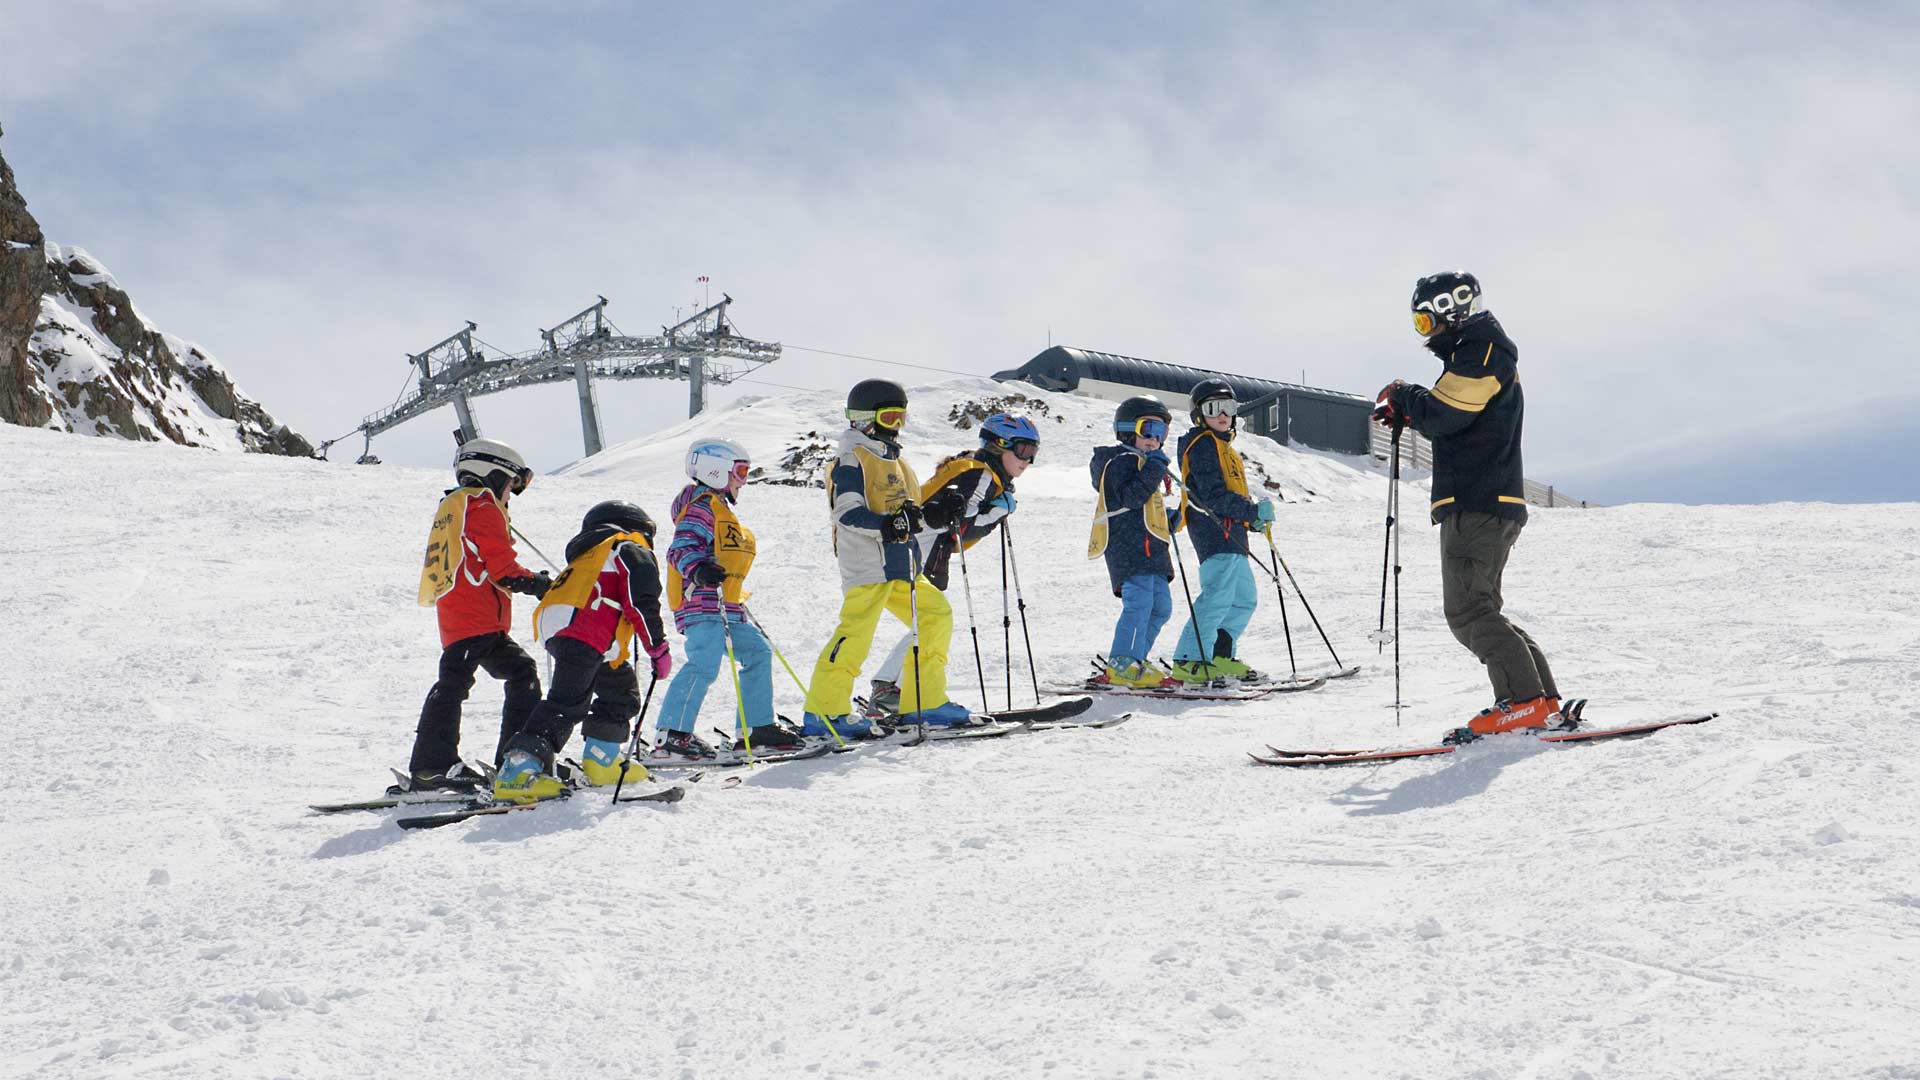 Ein Skilehrer der Alpin Schischule Neustift mit den kids beim skiunterricht am stubaier gletscher